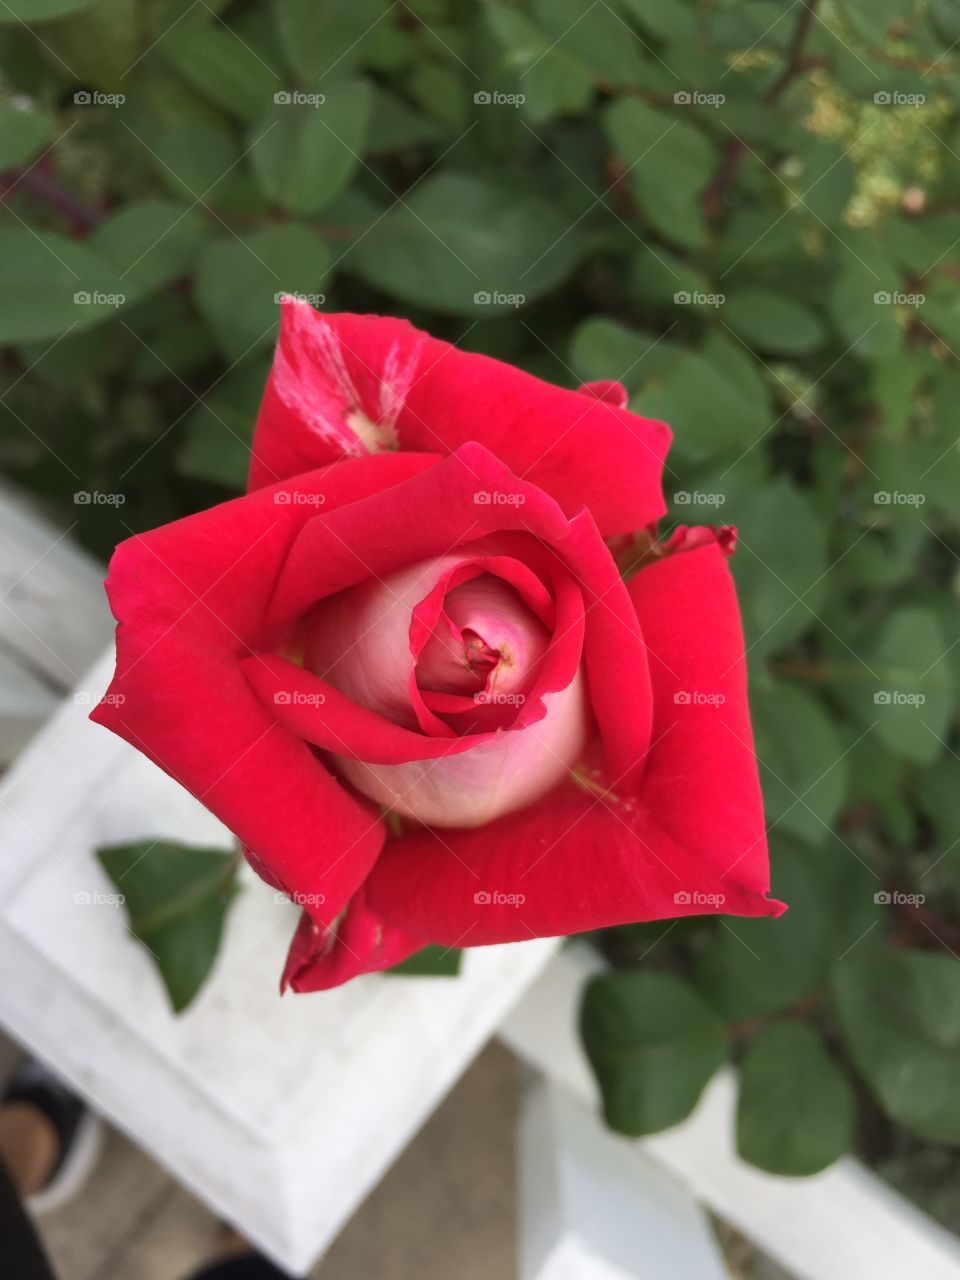 Rose, Flower, Love, Gift, Romance